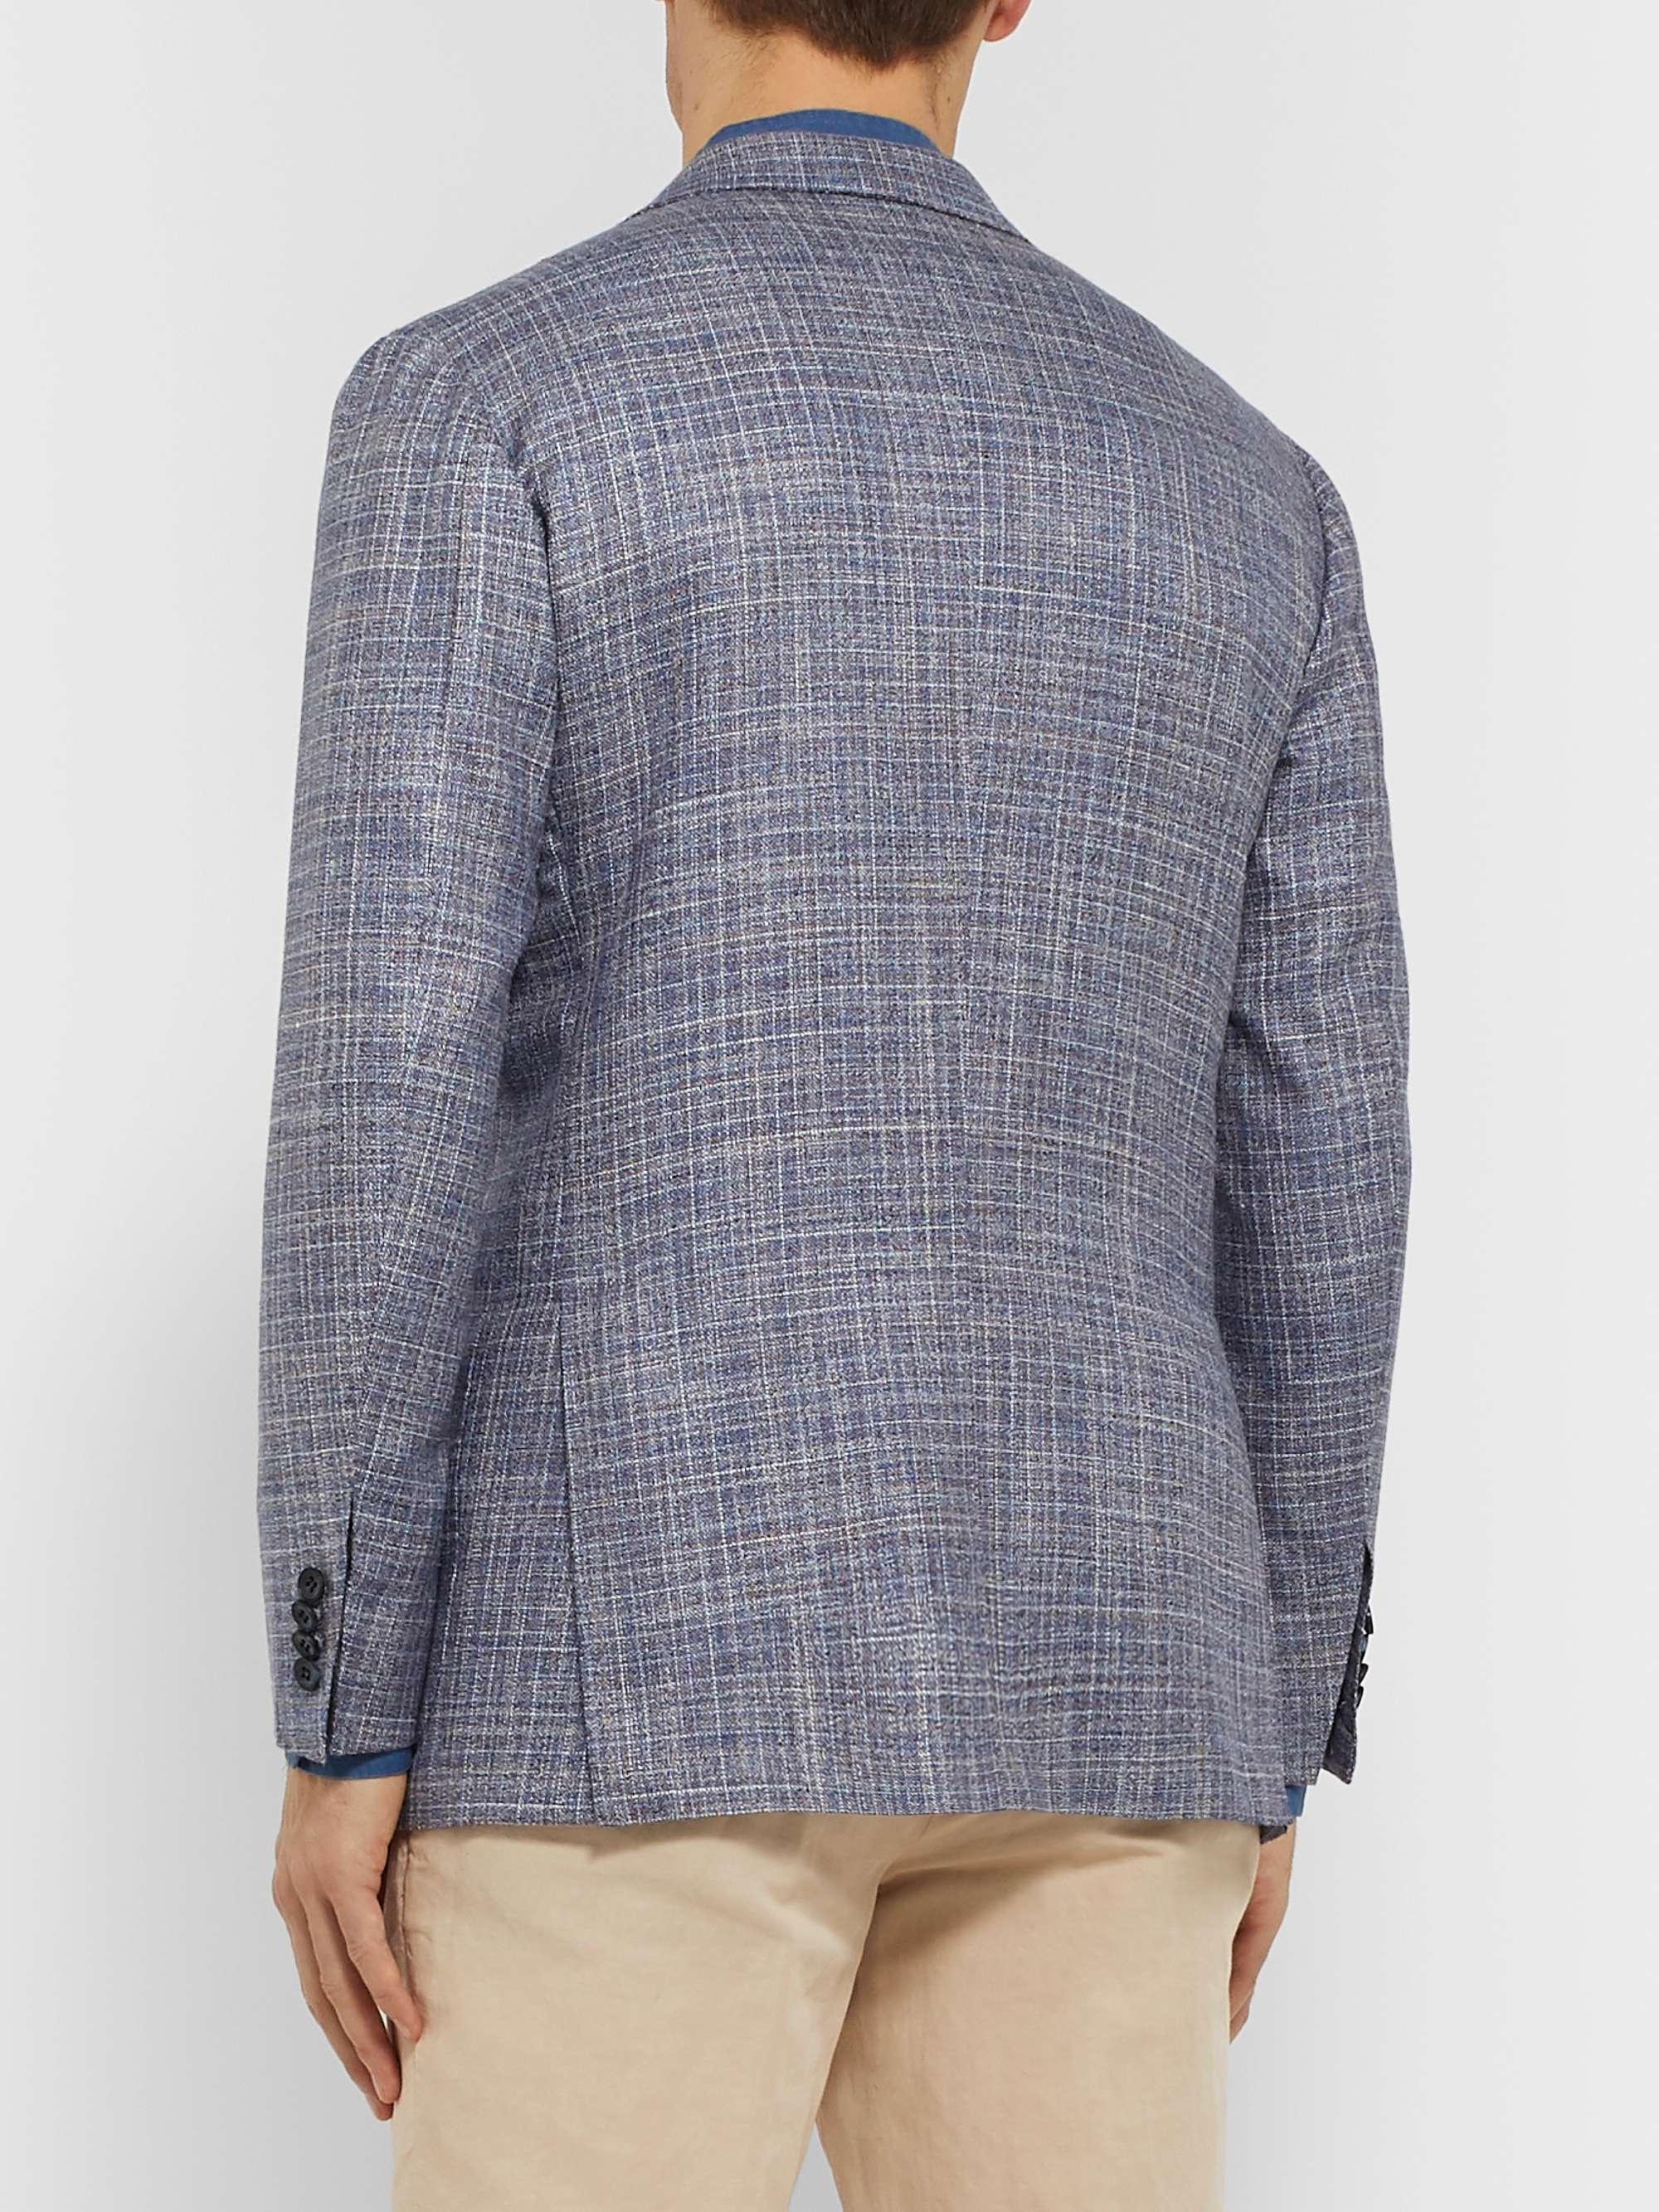 KITON Blue Slim-Fit Unstructured Cashmere, Virgin Wool, Silk and Linen-Blend Blazer